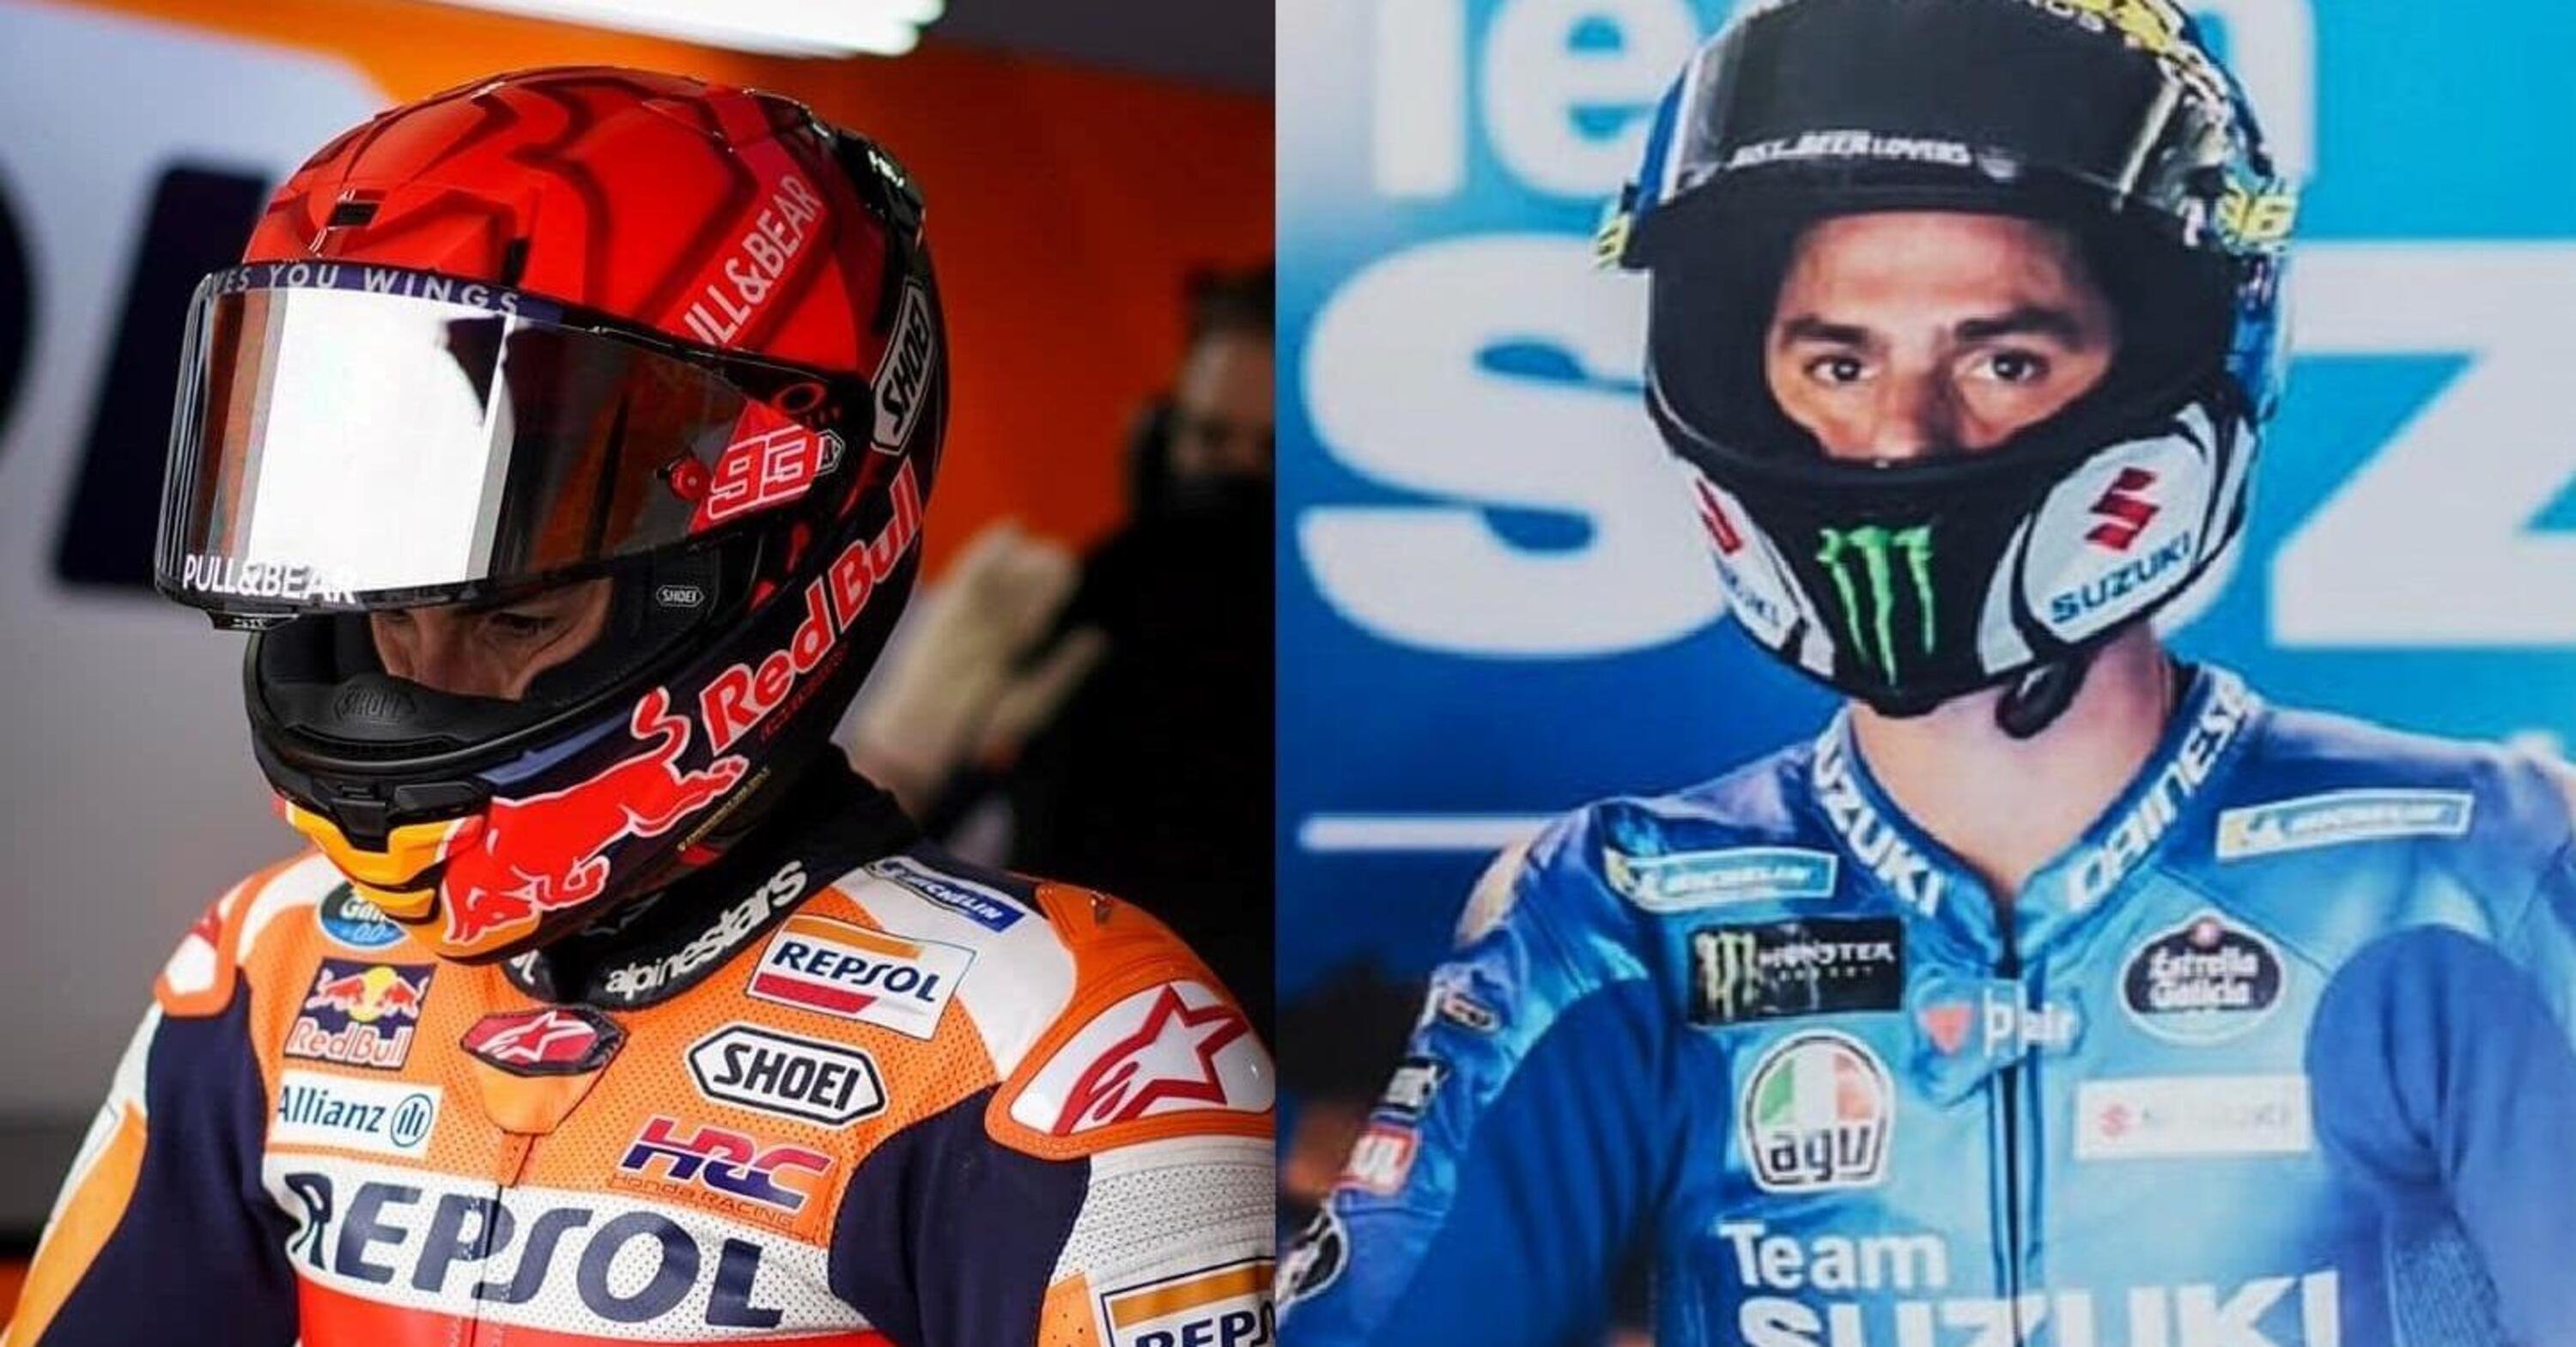 MotoGP 2022, GP Qatar, Marc Marquez: &ldquo;Non ho capito l&rsquo;anteriore&rdquo;. Joan Mir: &ldquo;Non potevo fare di pi&ugrave;&quot;